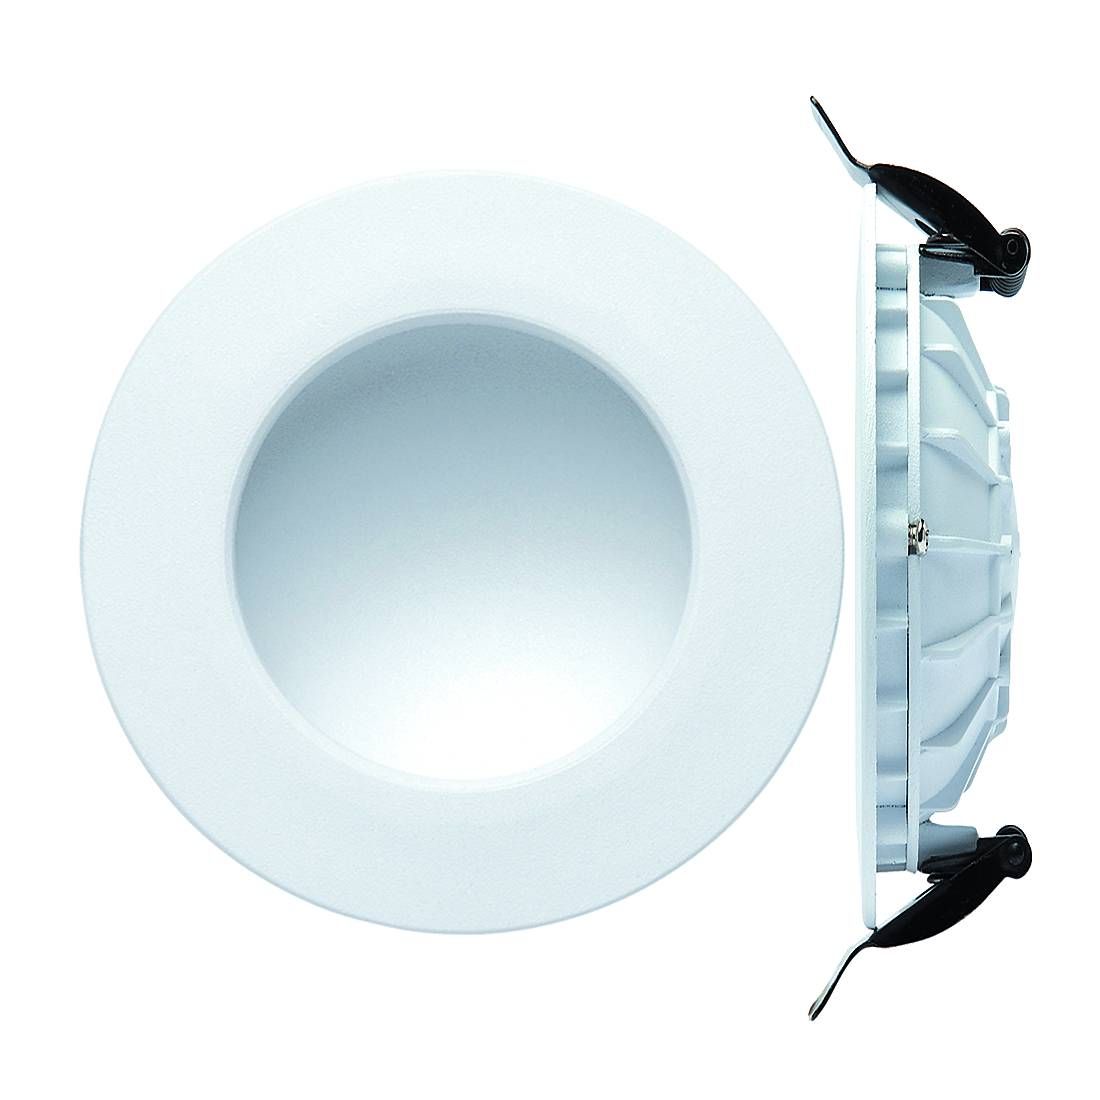 Светильник, 14.4 см, 12W, белый, C0048 Mantra CABRERA, встраиваемый светодиодный